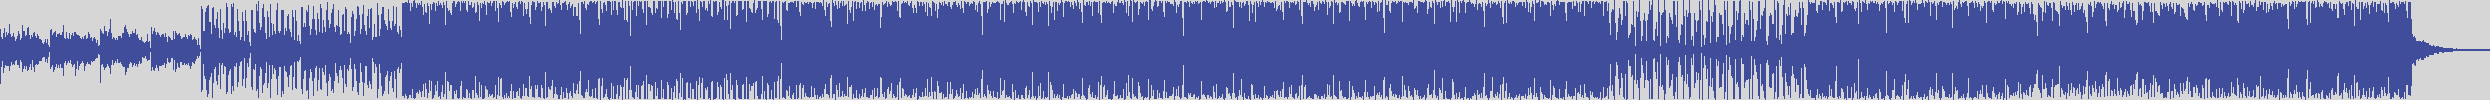 noclouds_chillout [NOC133] The Channel - Casta [Original Mix] audio wave form